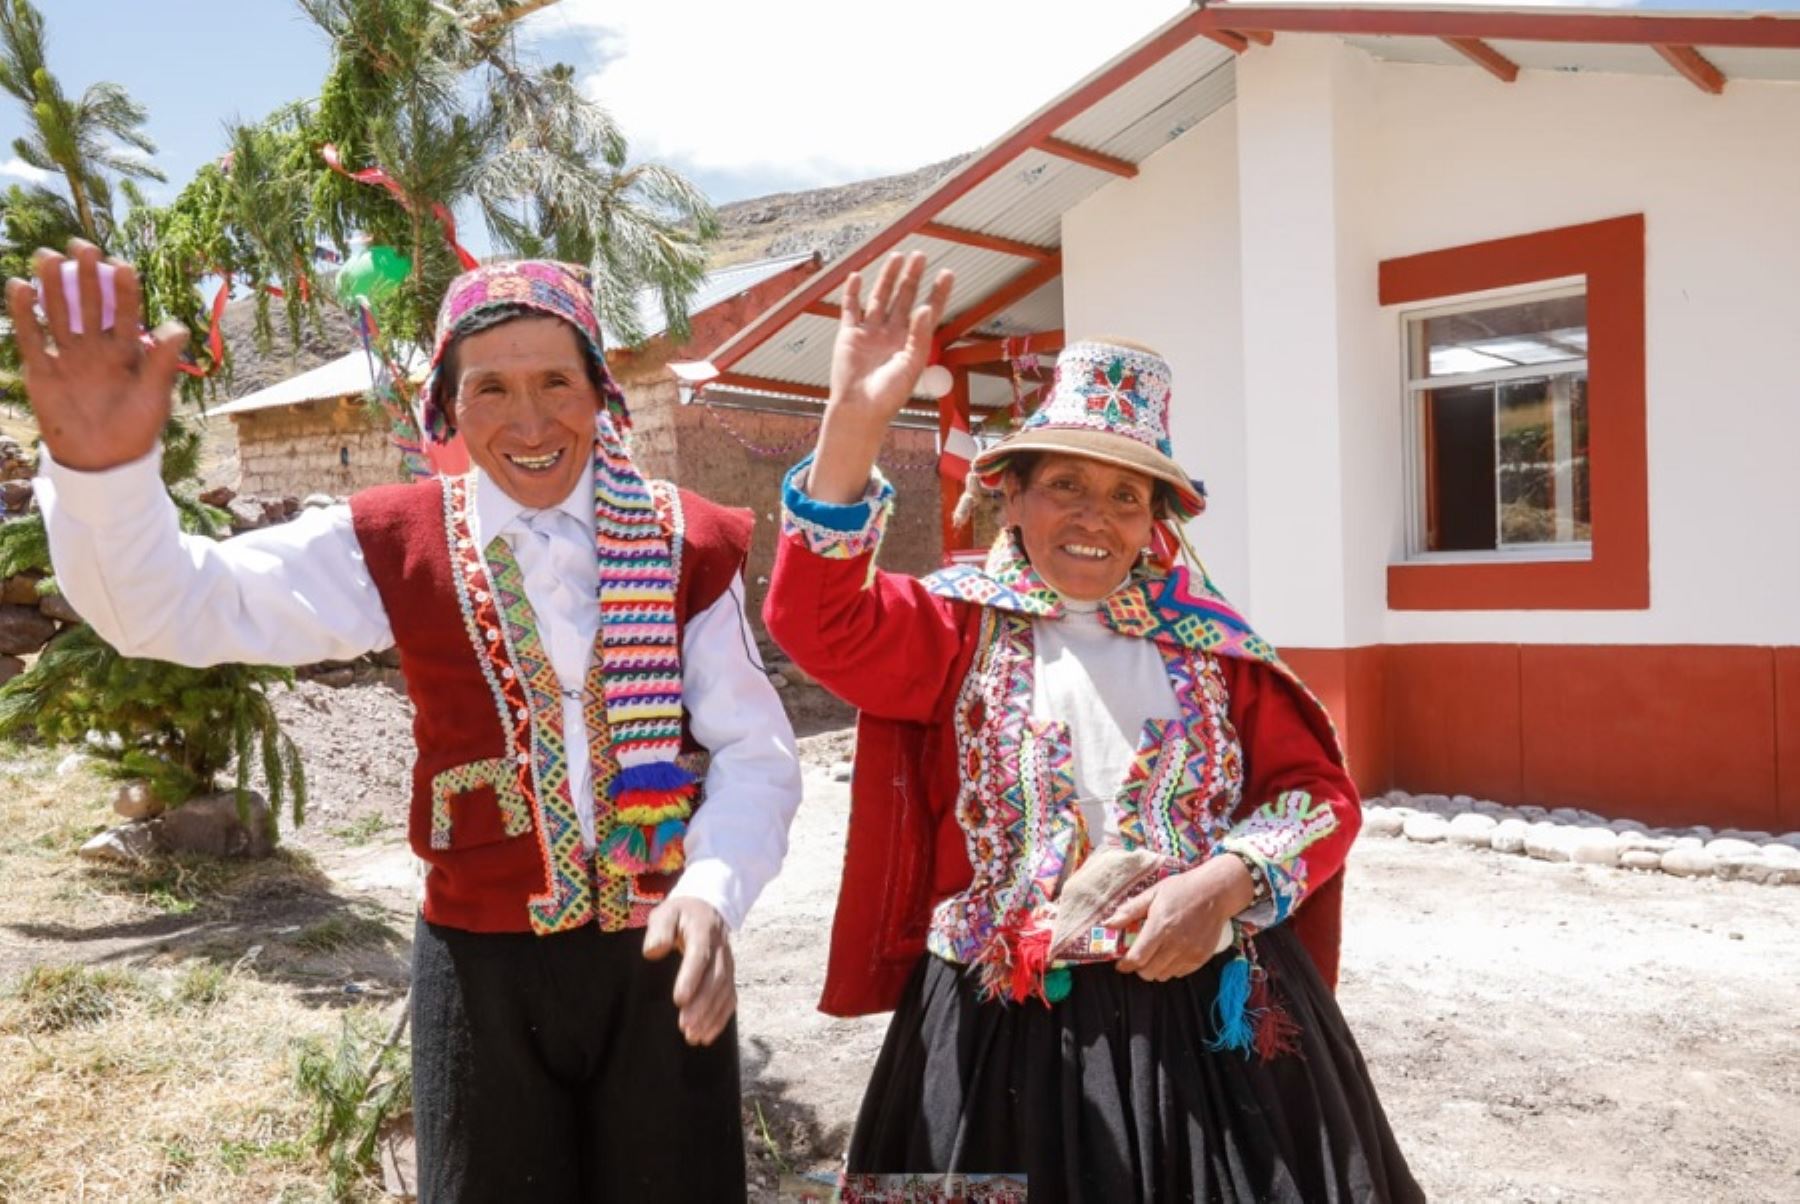 El Ministerio de Vivienda, Construcción y Saneamiento (MVCS) entregó 41 viviendas bioclimáticas Sumaq Wasi que protegerán de las bajas temperaturas a familias de zonas rurales de los distritos de Checacupe, Combapata y Pitumarca, en la provincia de Canchis, departamento de Cusco.